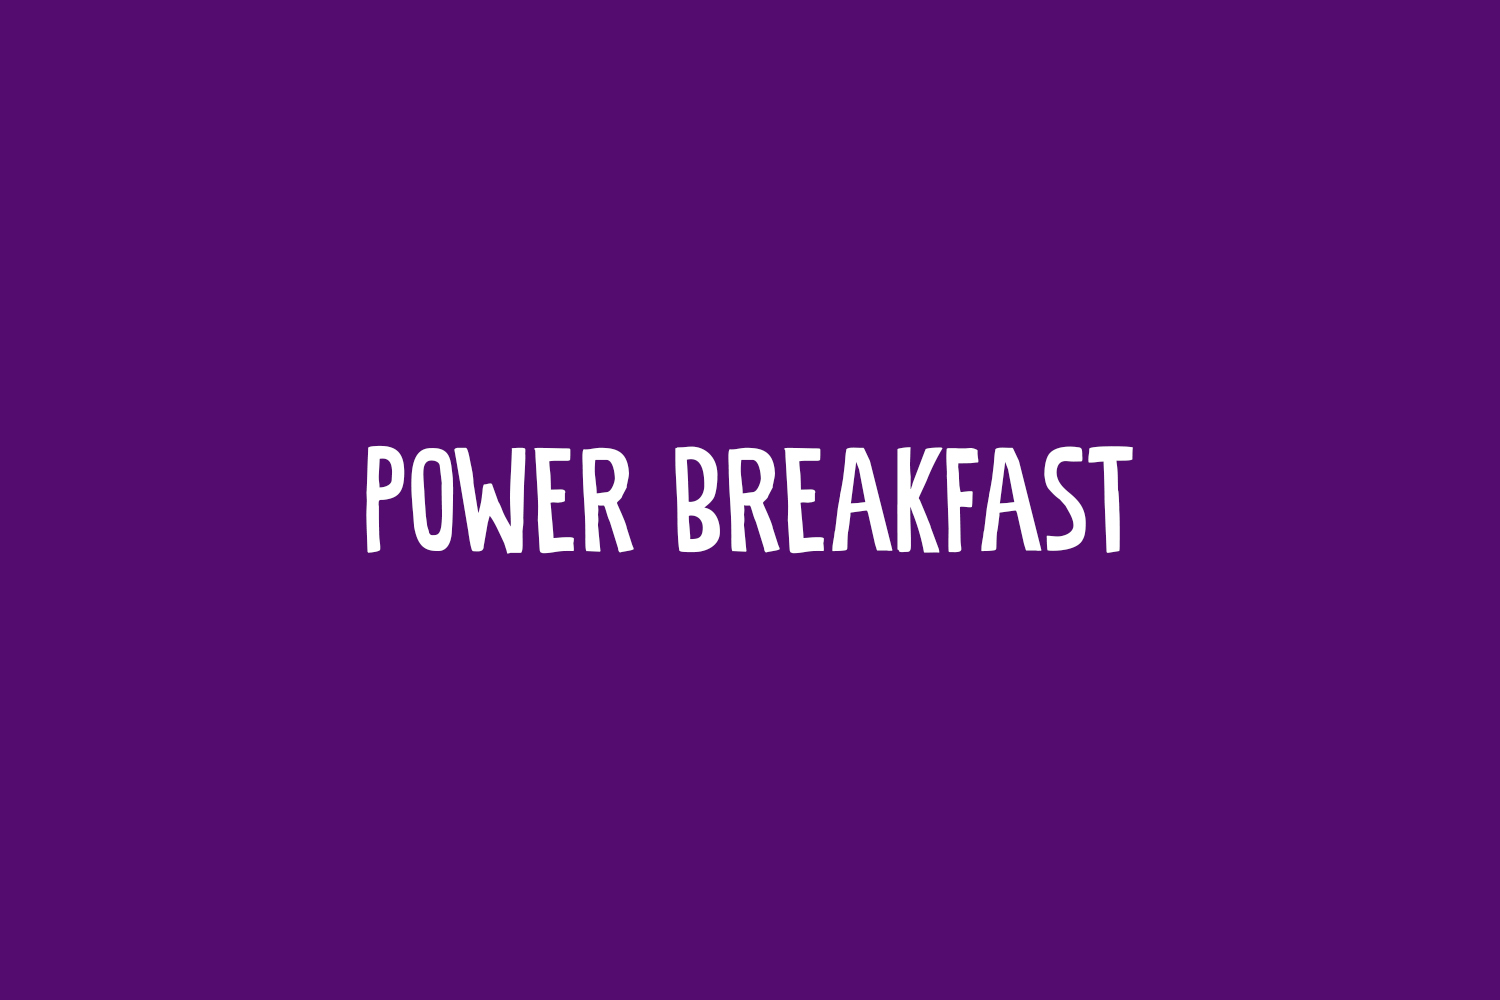 Power Breakfast Free Font